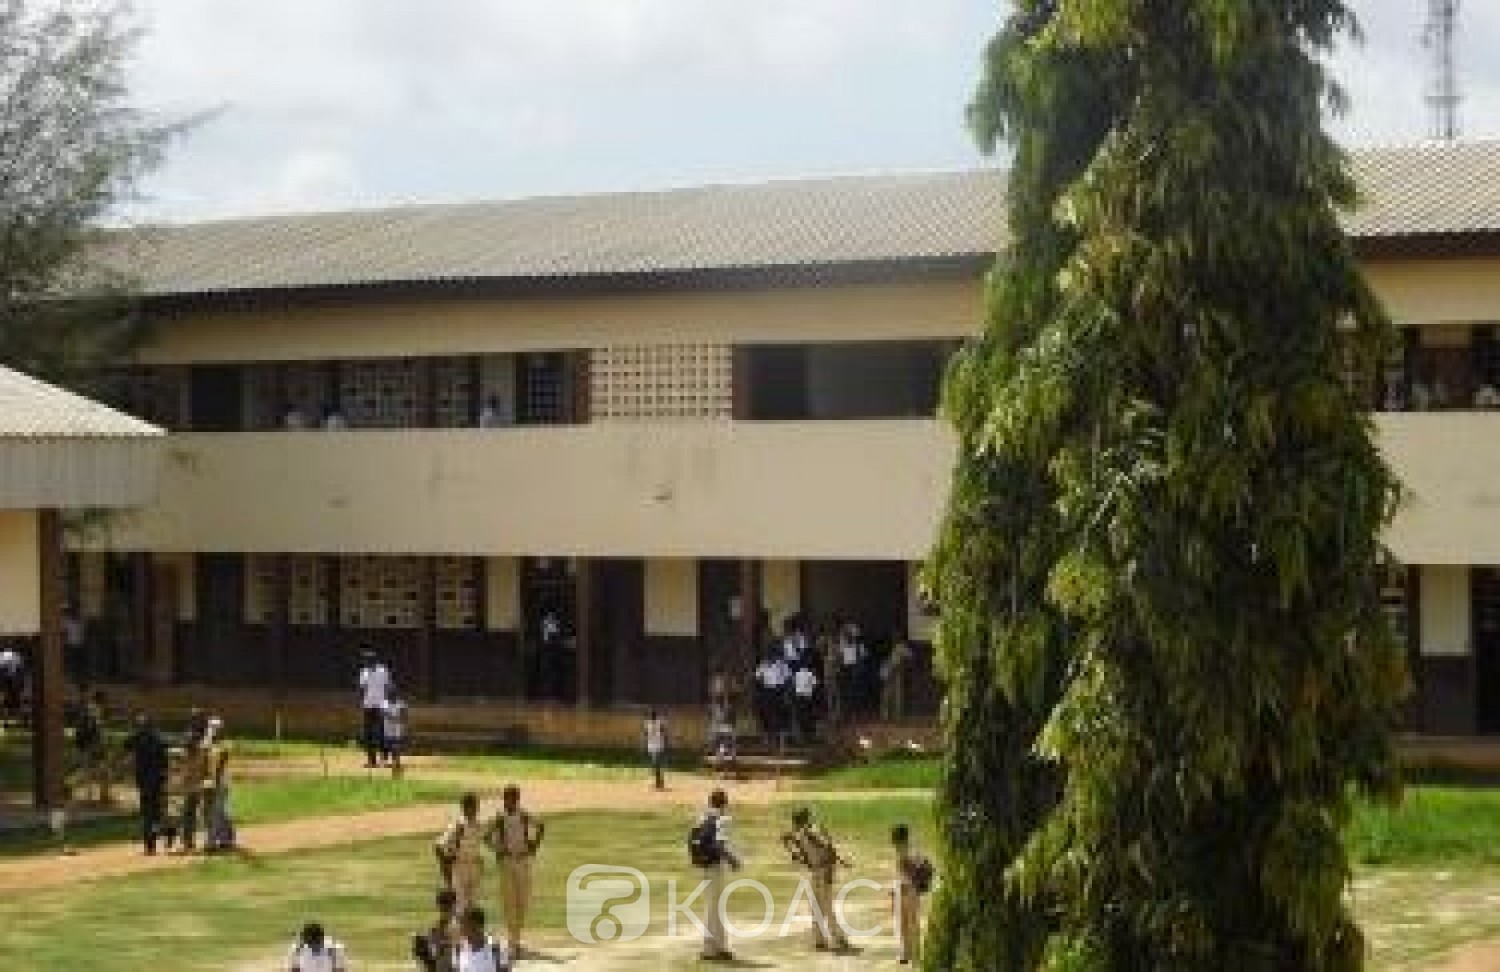 Côte d'Ivoire : En pleine surveillance du BEPC, un enseignant victime d'un malaise succombe